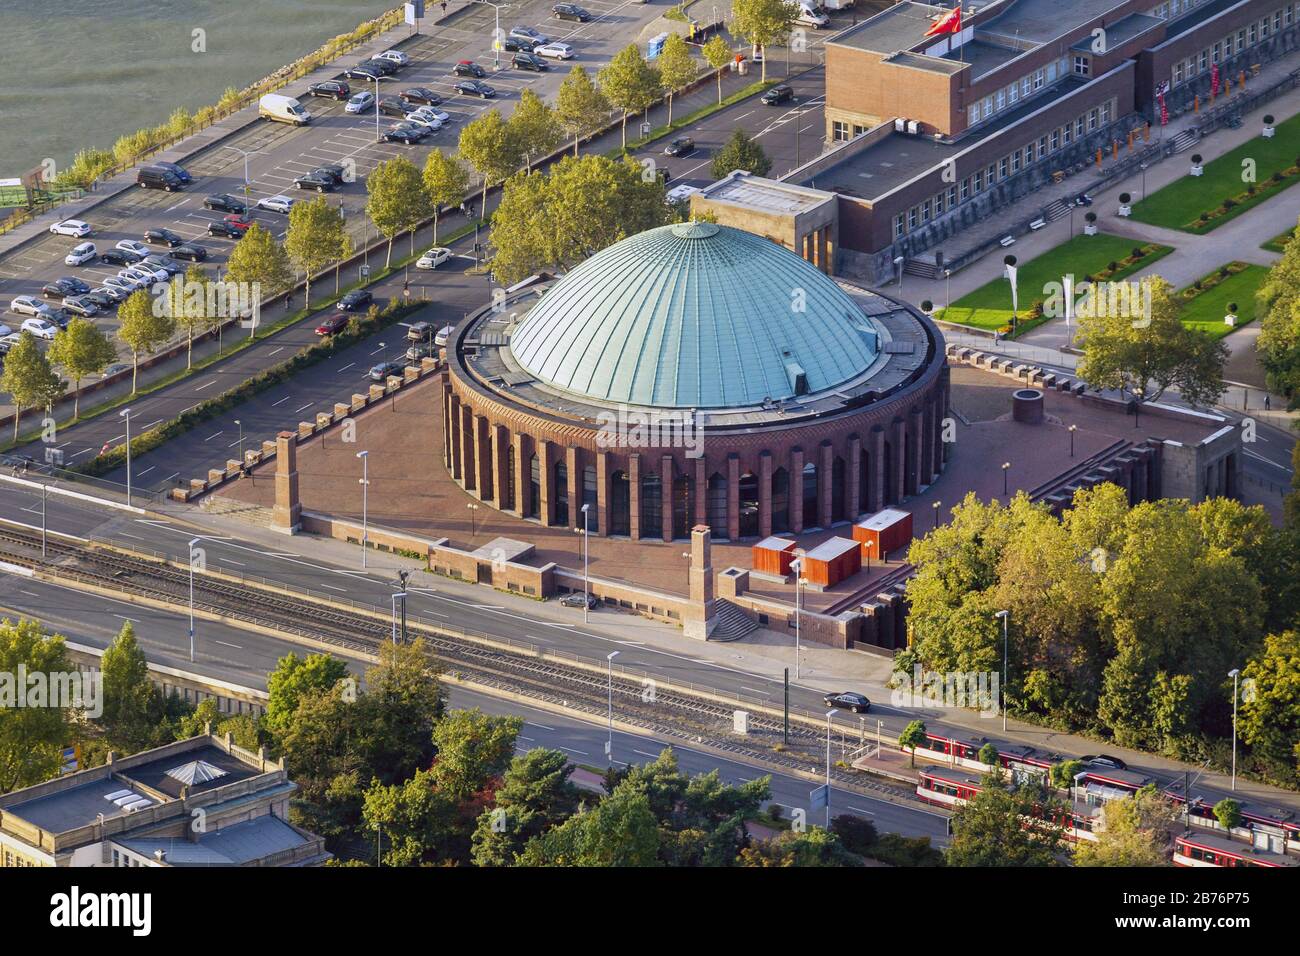 , Tonhalle in Dusseldorf, 10.10.2012, aerial view, Germany, North Rhine-Westphalia, Lower Rhine, Dusseldorf Stock Photo